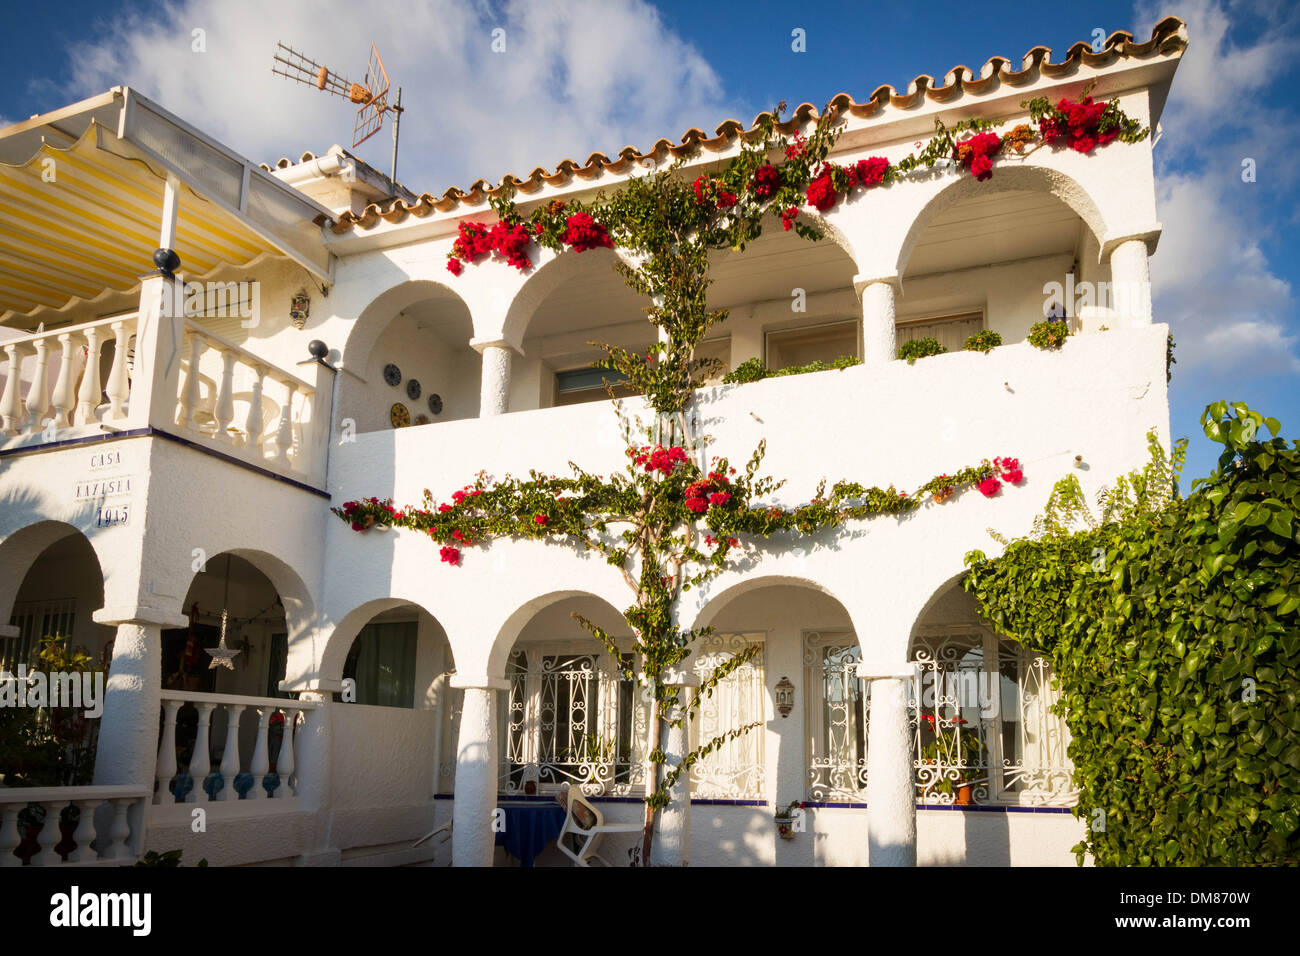 Rote Blumen schmücken die Front eines Hauses in Südspanien Stockfoto